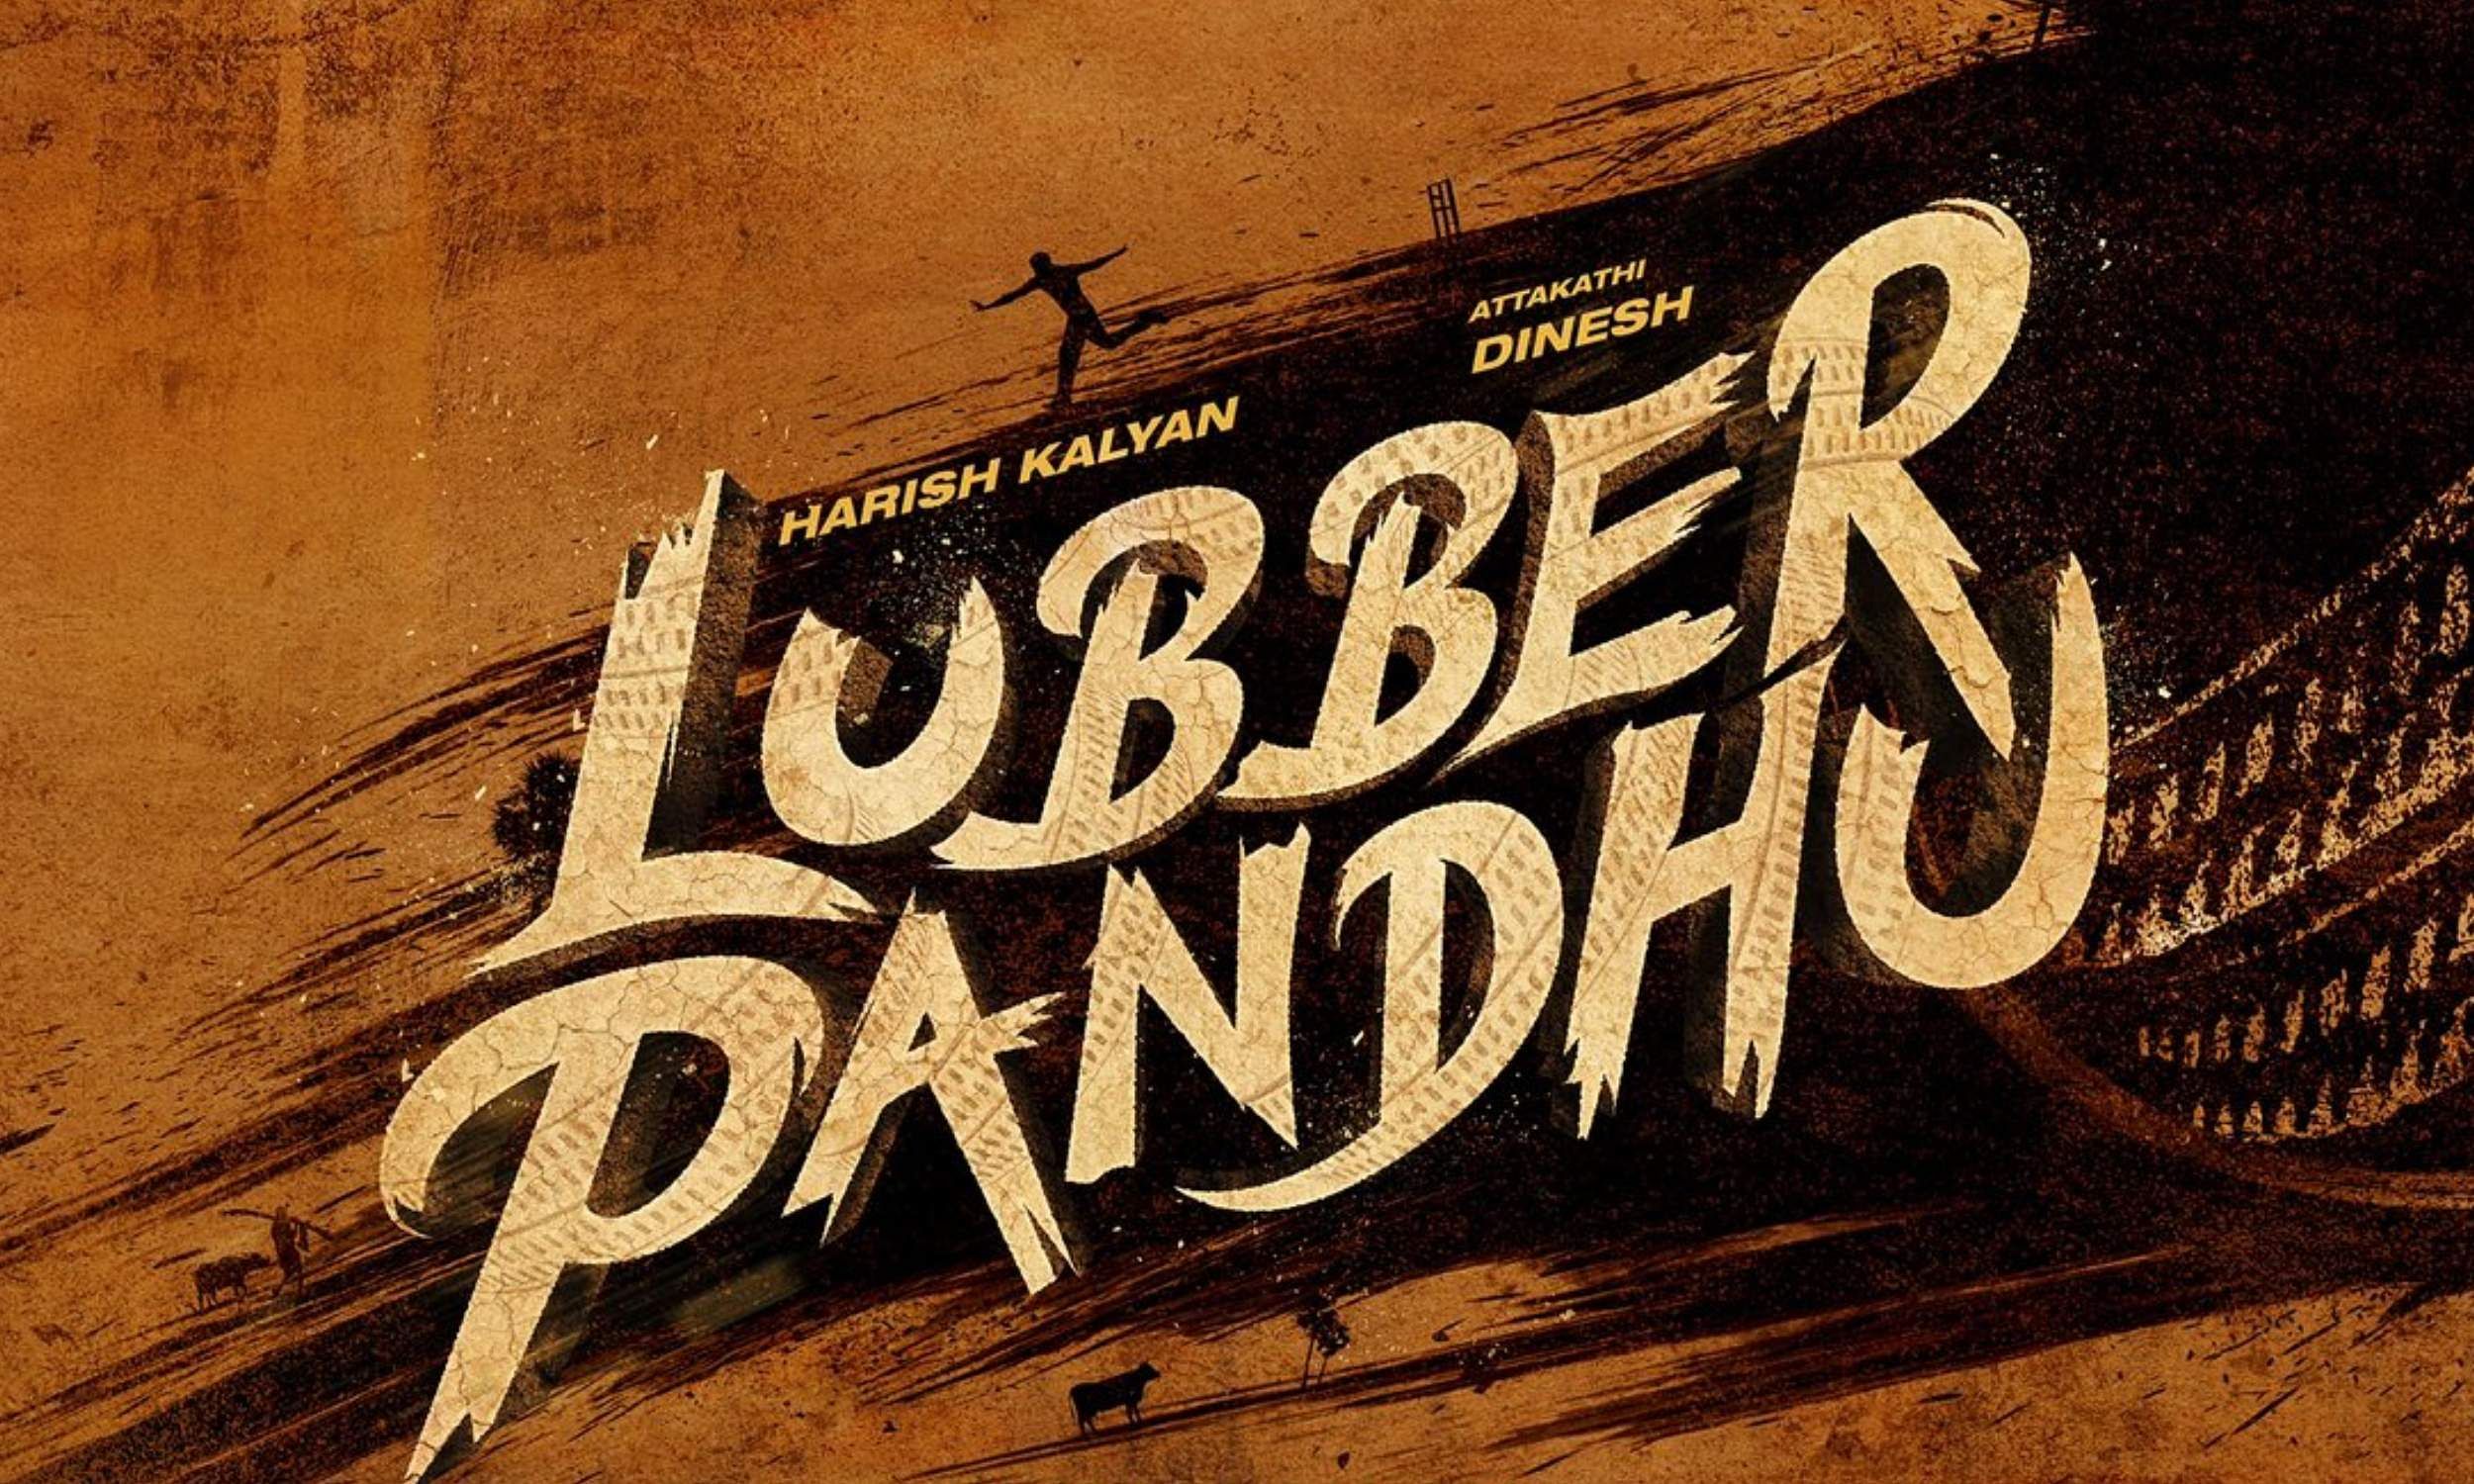 Harish Kalyan and Attakathi Dinesh to star in Lubber Pandhu